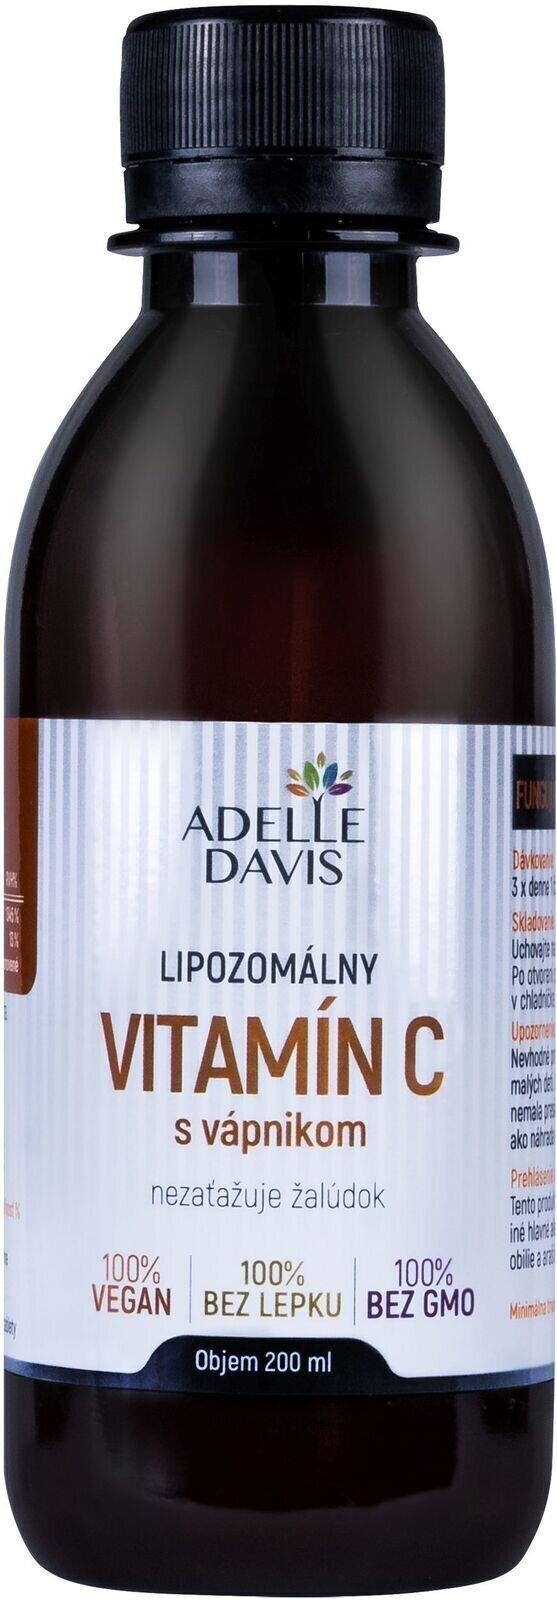 C-vitamin Adelle Davis Liposomal Vitamin C Calcium 200 ml Vitamin C with Calcium C-vitamin